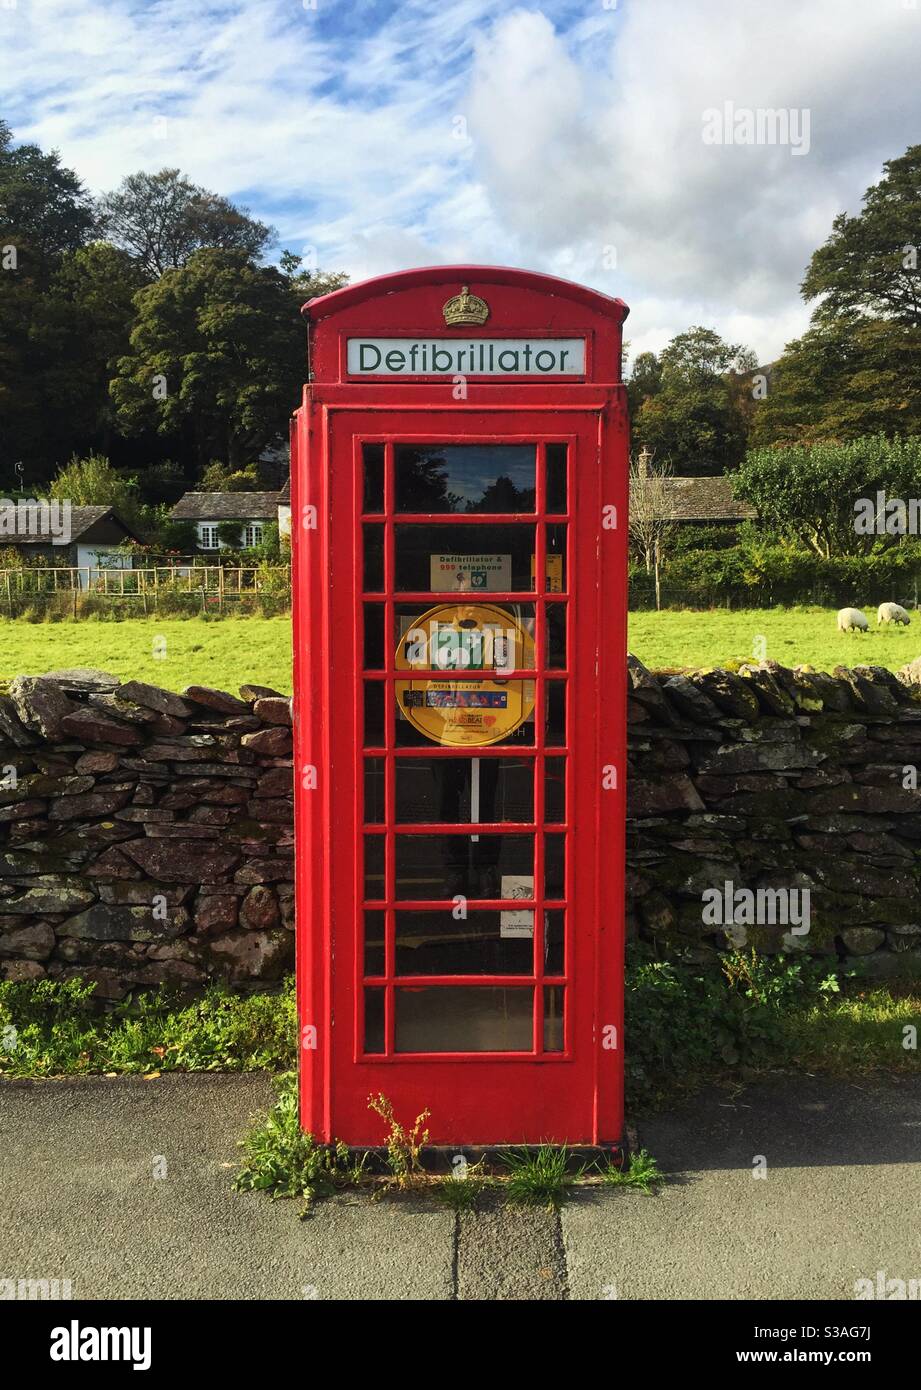 Una scatola telefonica britannica rossa in cui è stata convertita Una stazione di defibrillazione per uso pubblico nella campagna britannica Foto Stock